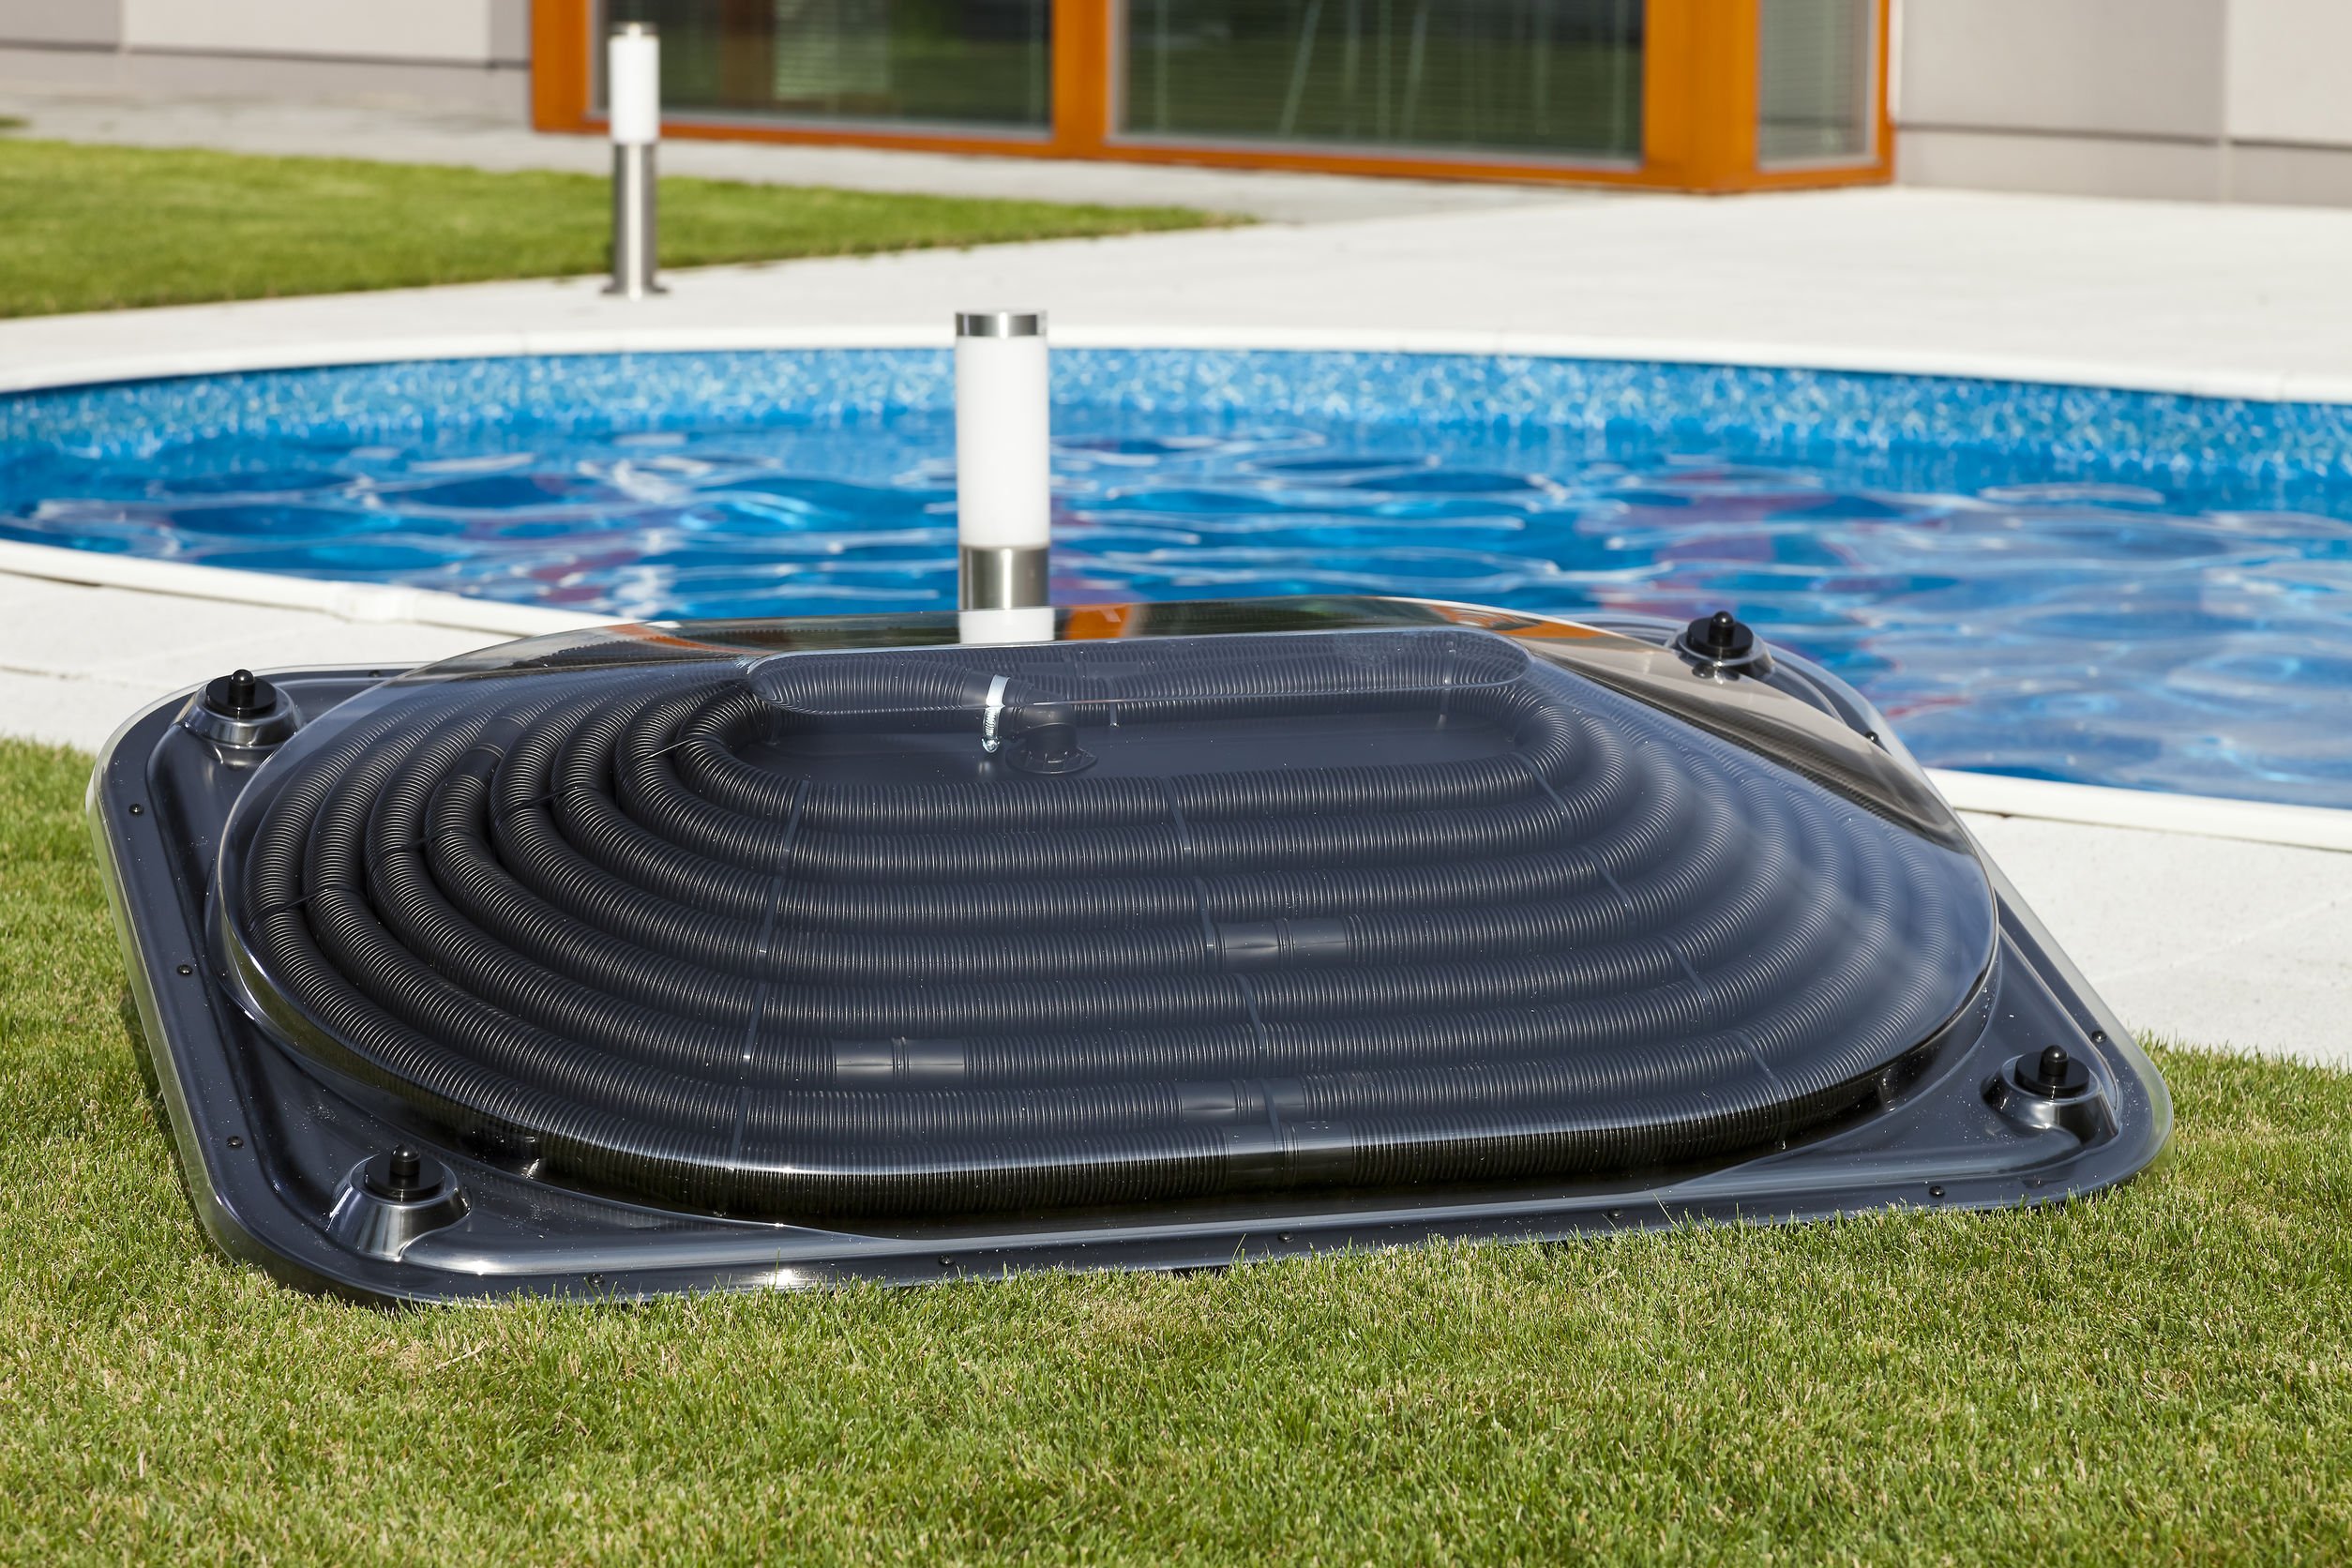 Panneau solaire pour le chauffage d'une piscine, coût réparation chauffage piscine, prix chauffage piscine